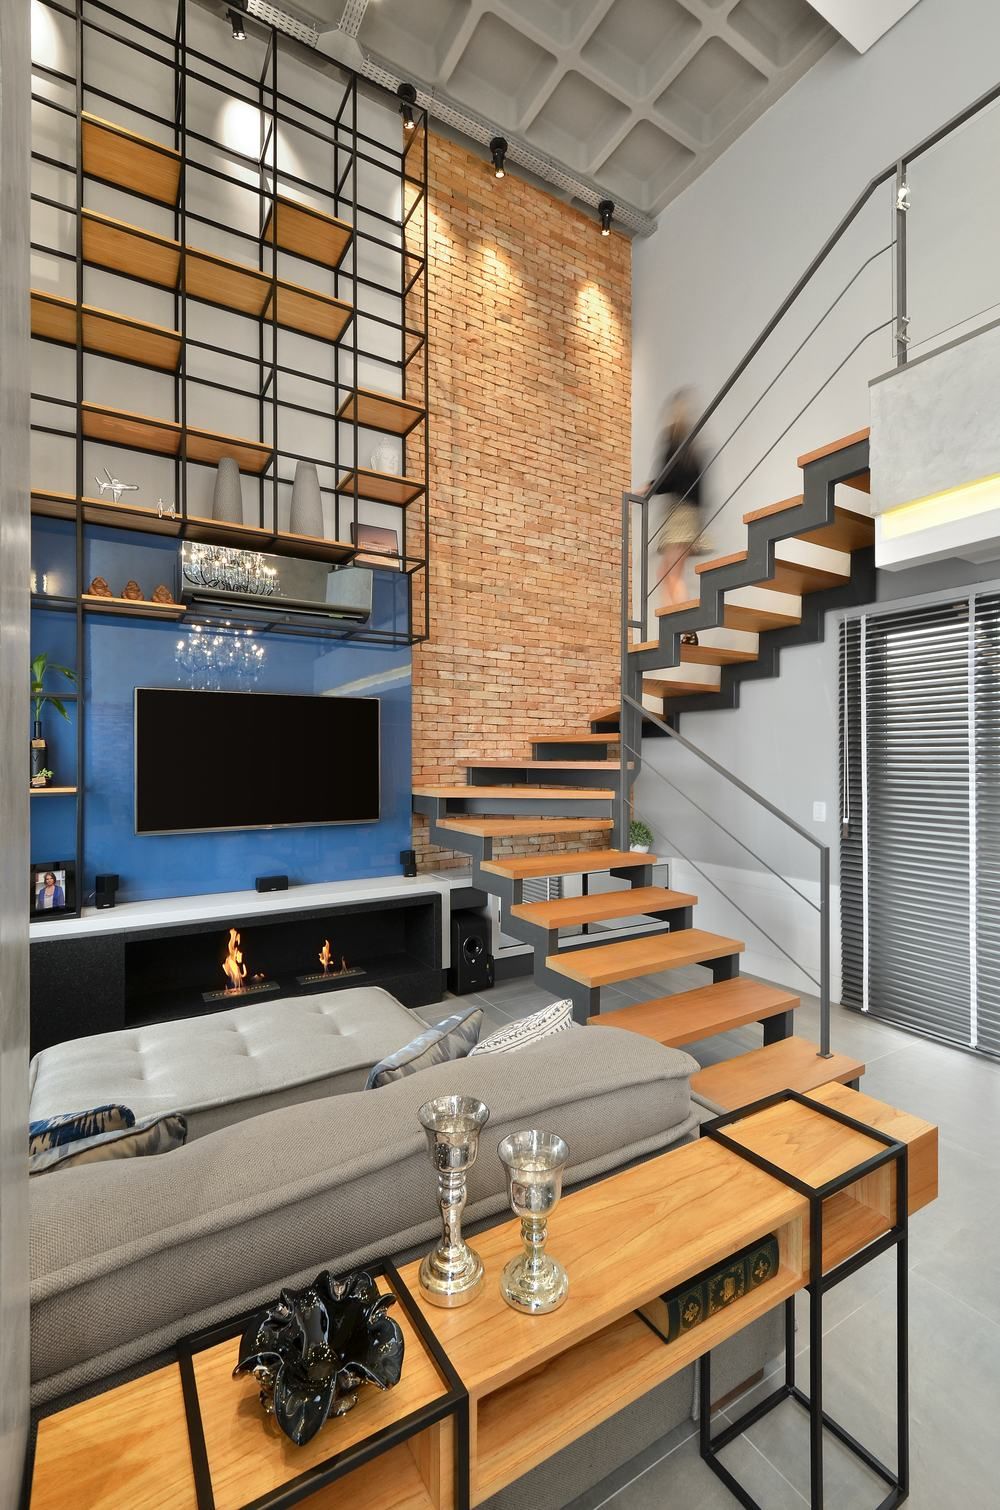 Sala industrial com escadas modernas de ferro e madeira